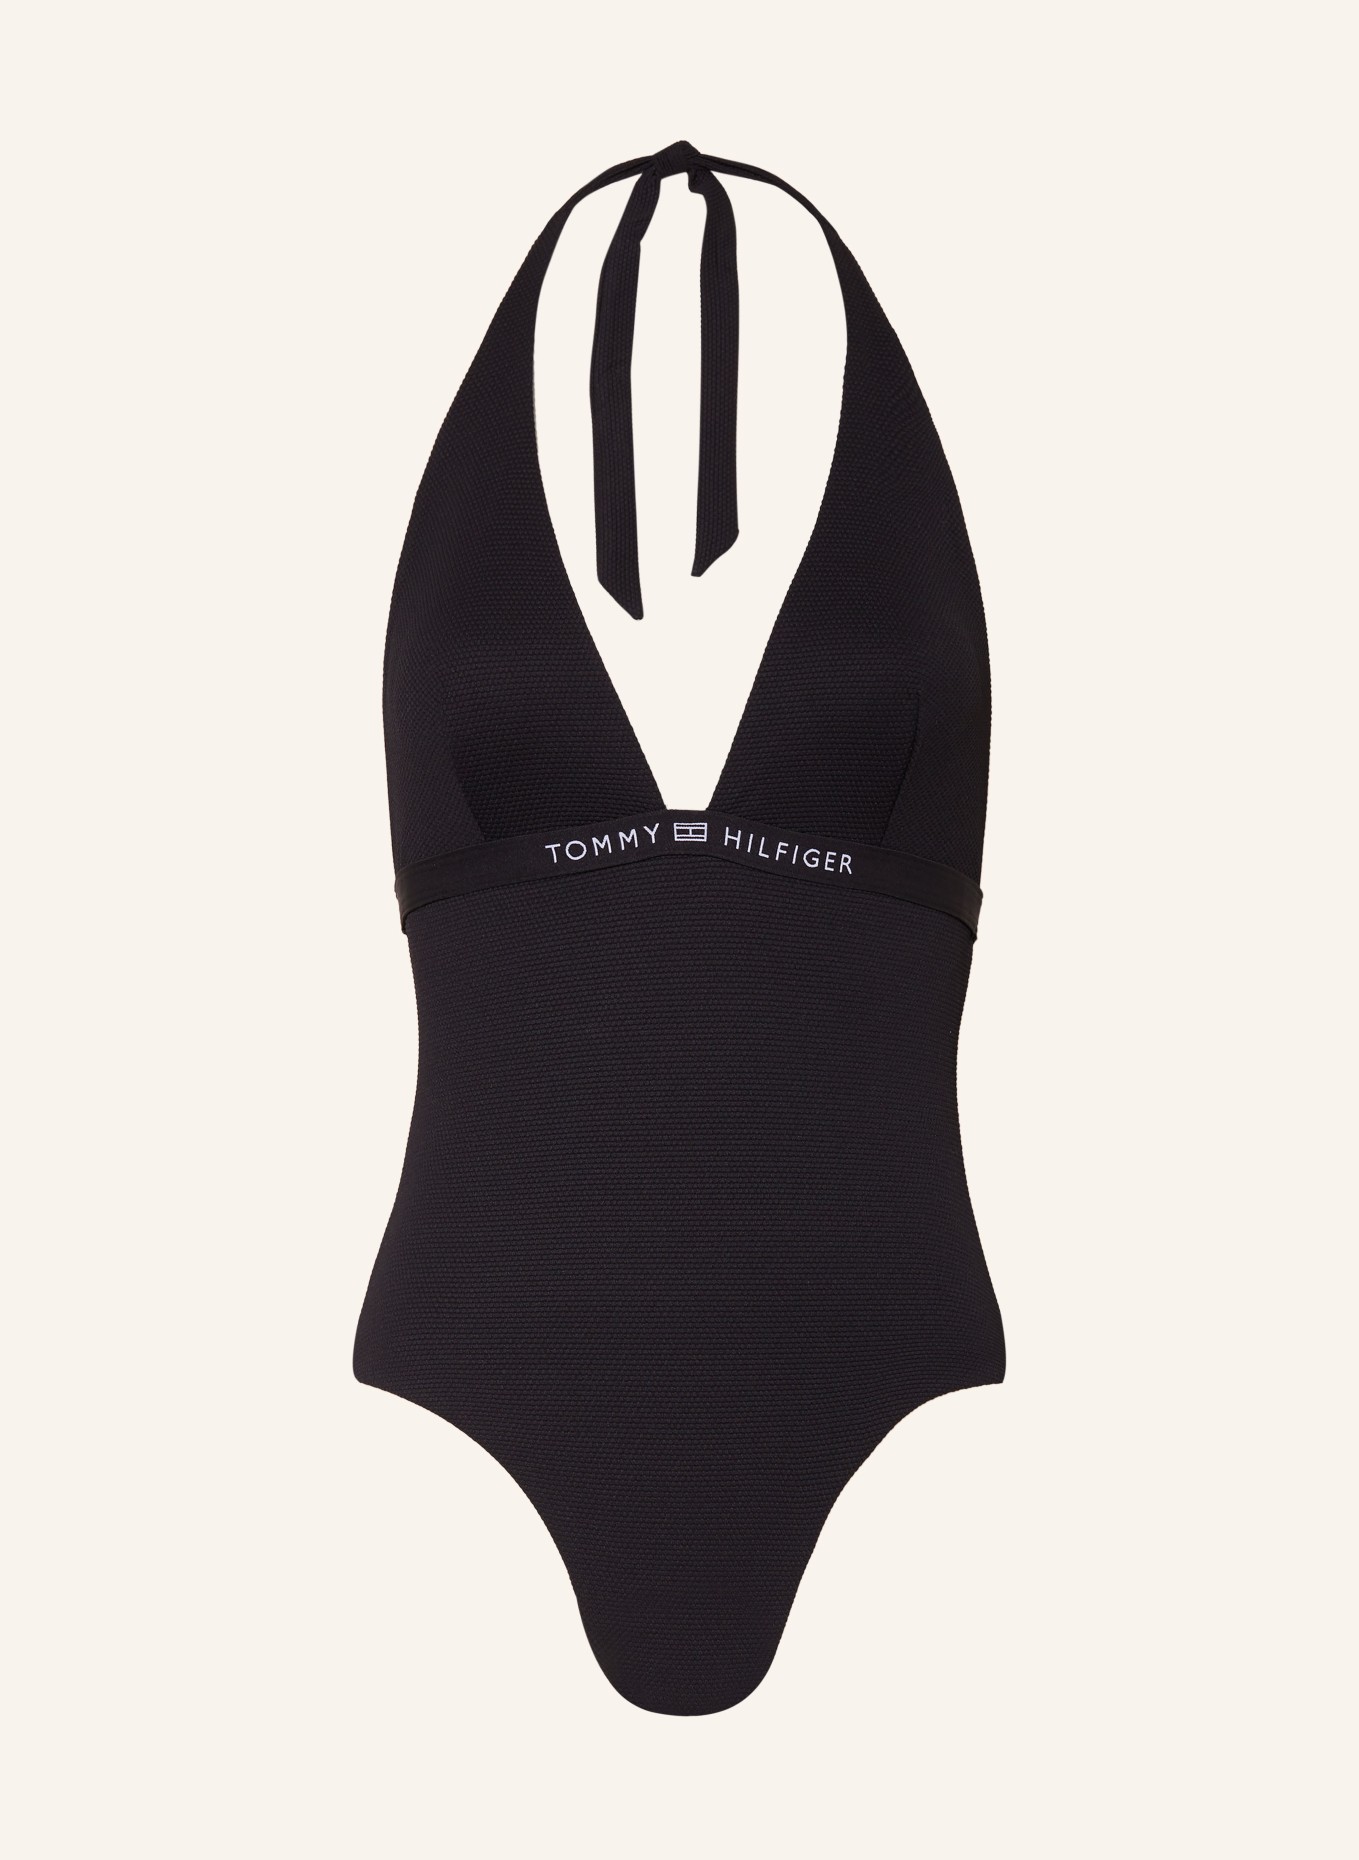 TOMMY HILFIGER Halter neck swimsuit, Color: BLACK (Image 1)